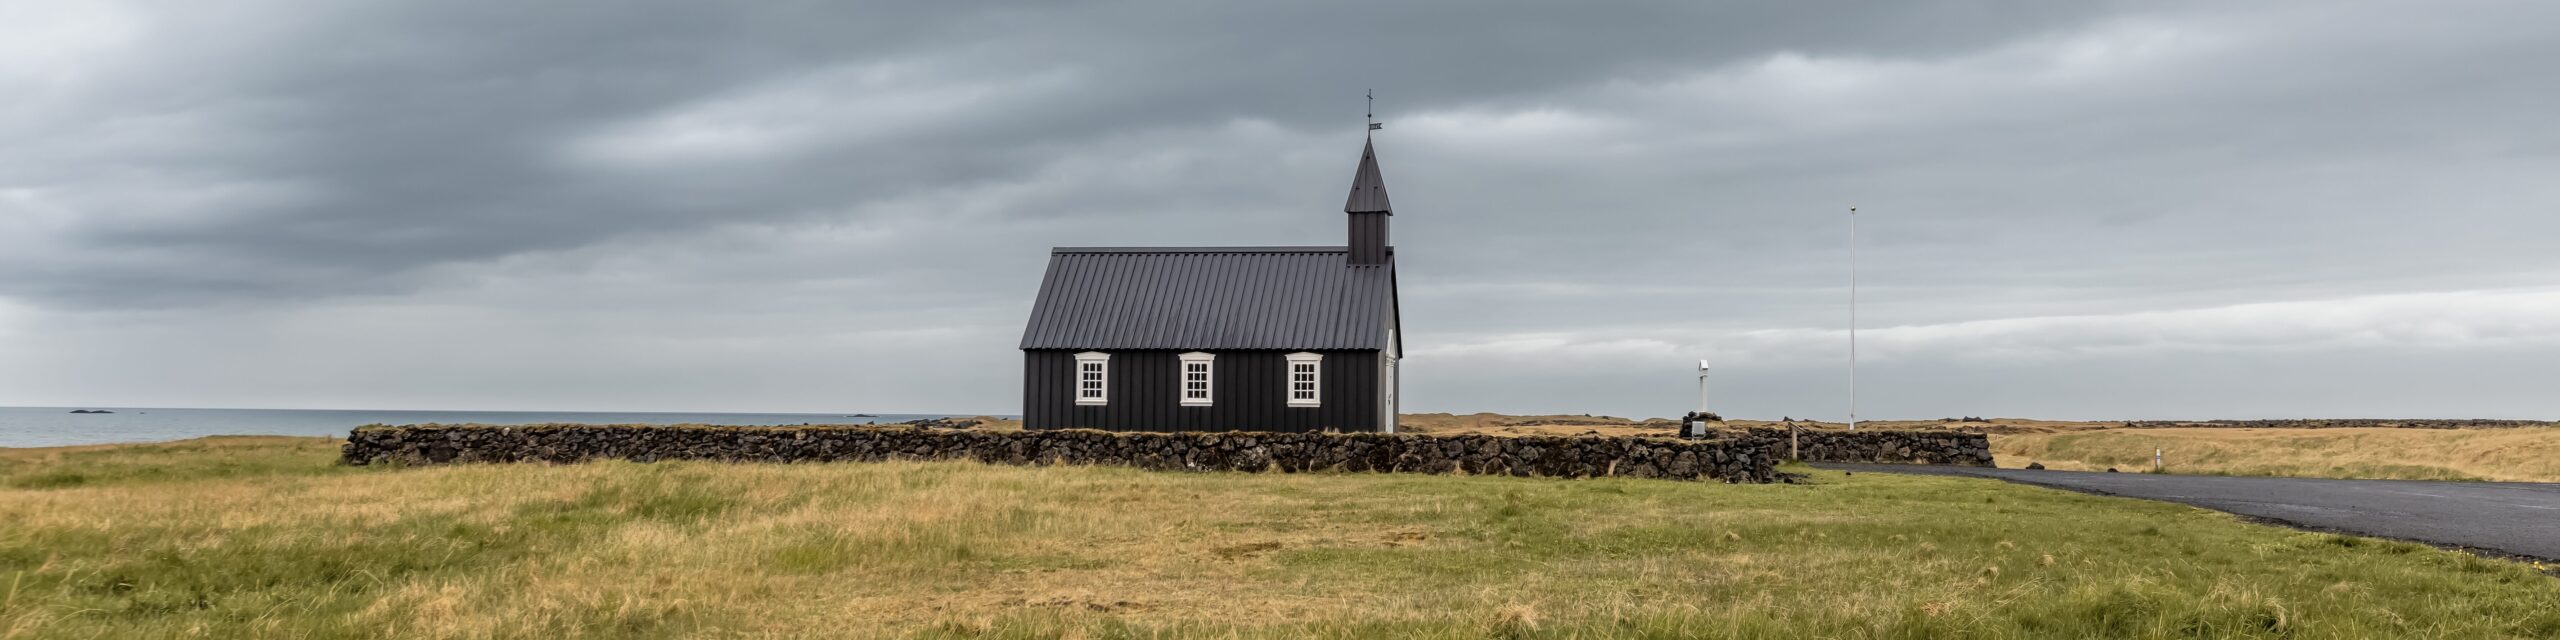 Einsame kleine Kirche auf offenem Feld